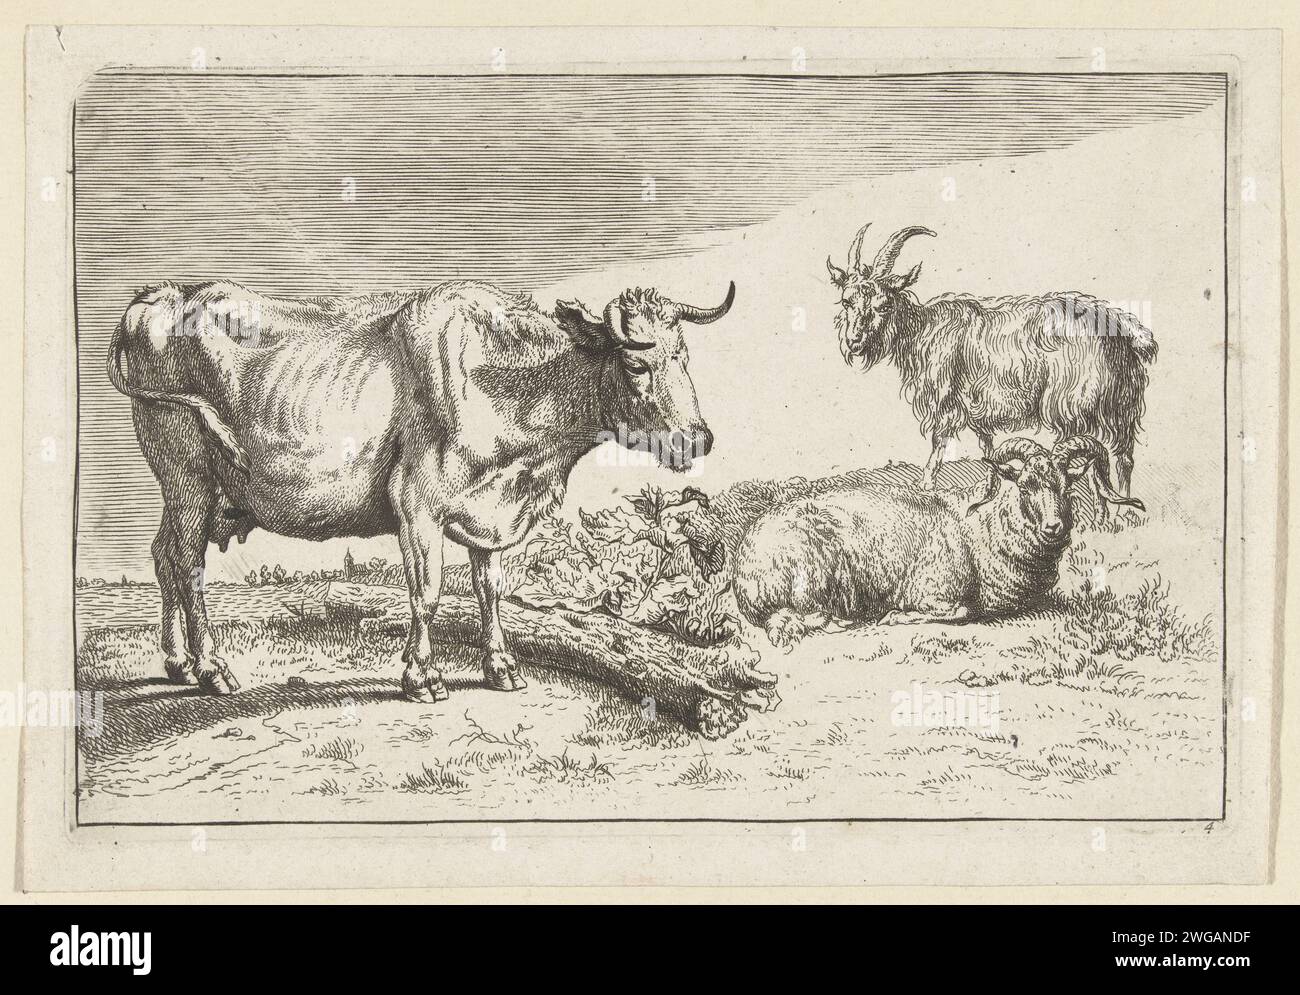 Vache debout avec corne tordue avec un mouton et une chèvre, anonyme, d'après Nicolaes Pietersz Berchem, d'après Paulus Potter, 1635 - 1733 print pays-Bas papier gravure vache Banque D'Images